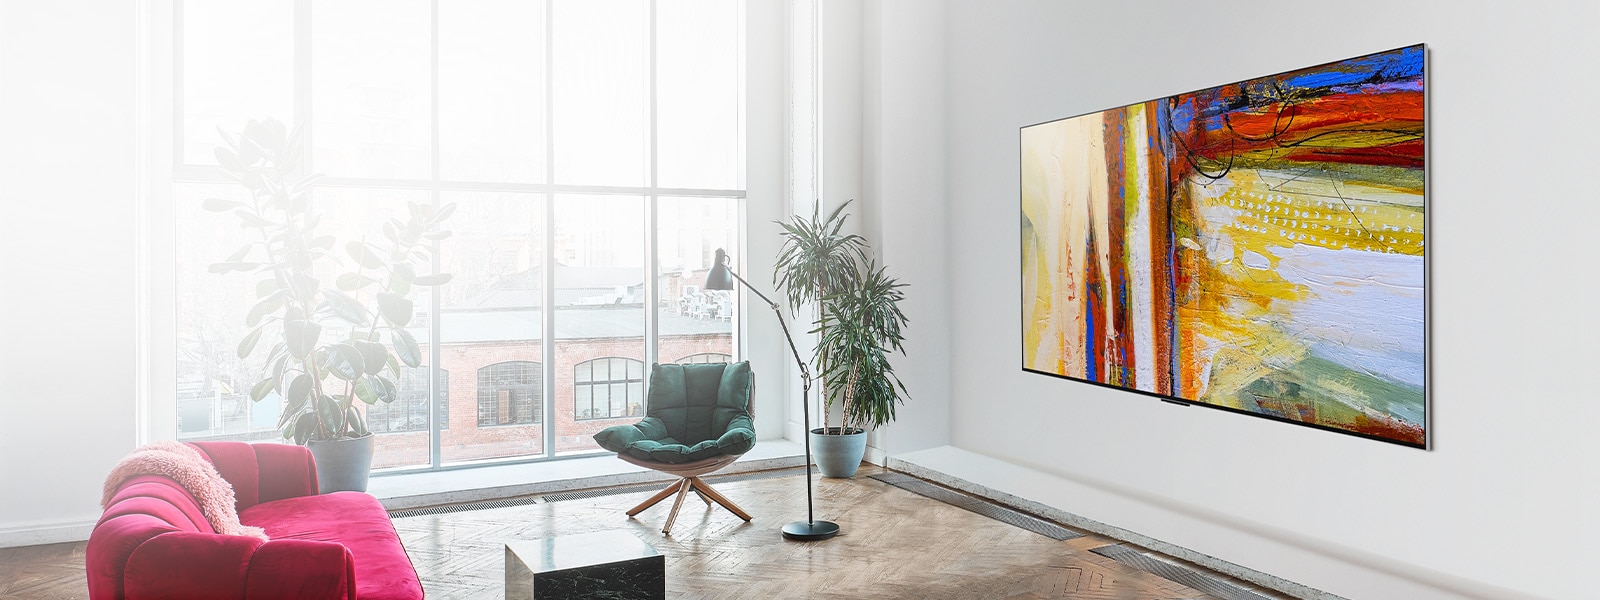 Slika LG OLED G3 prikazuje barvito abstraktno umetniško delo v svetlo obarvani in sončni sobi.